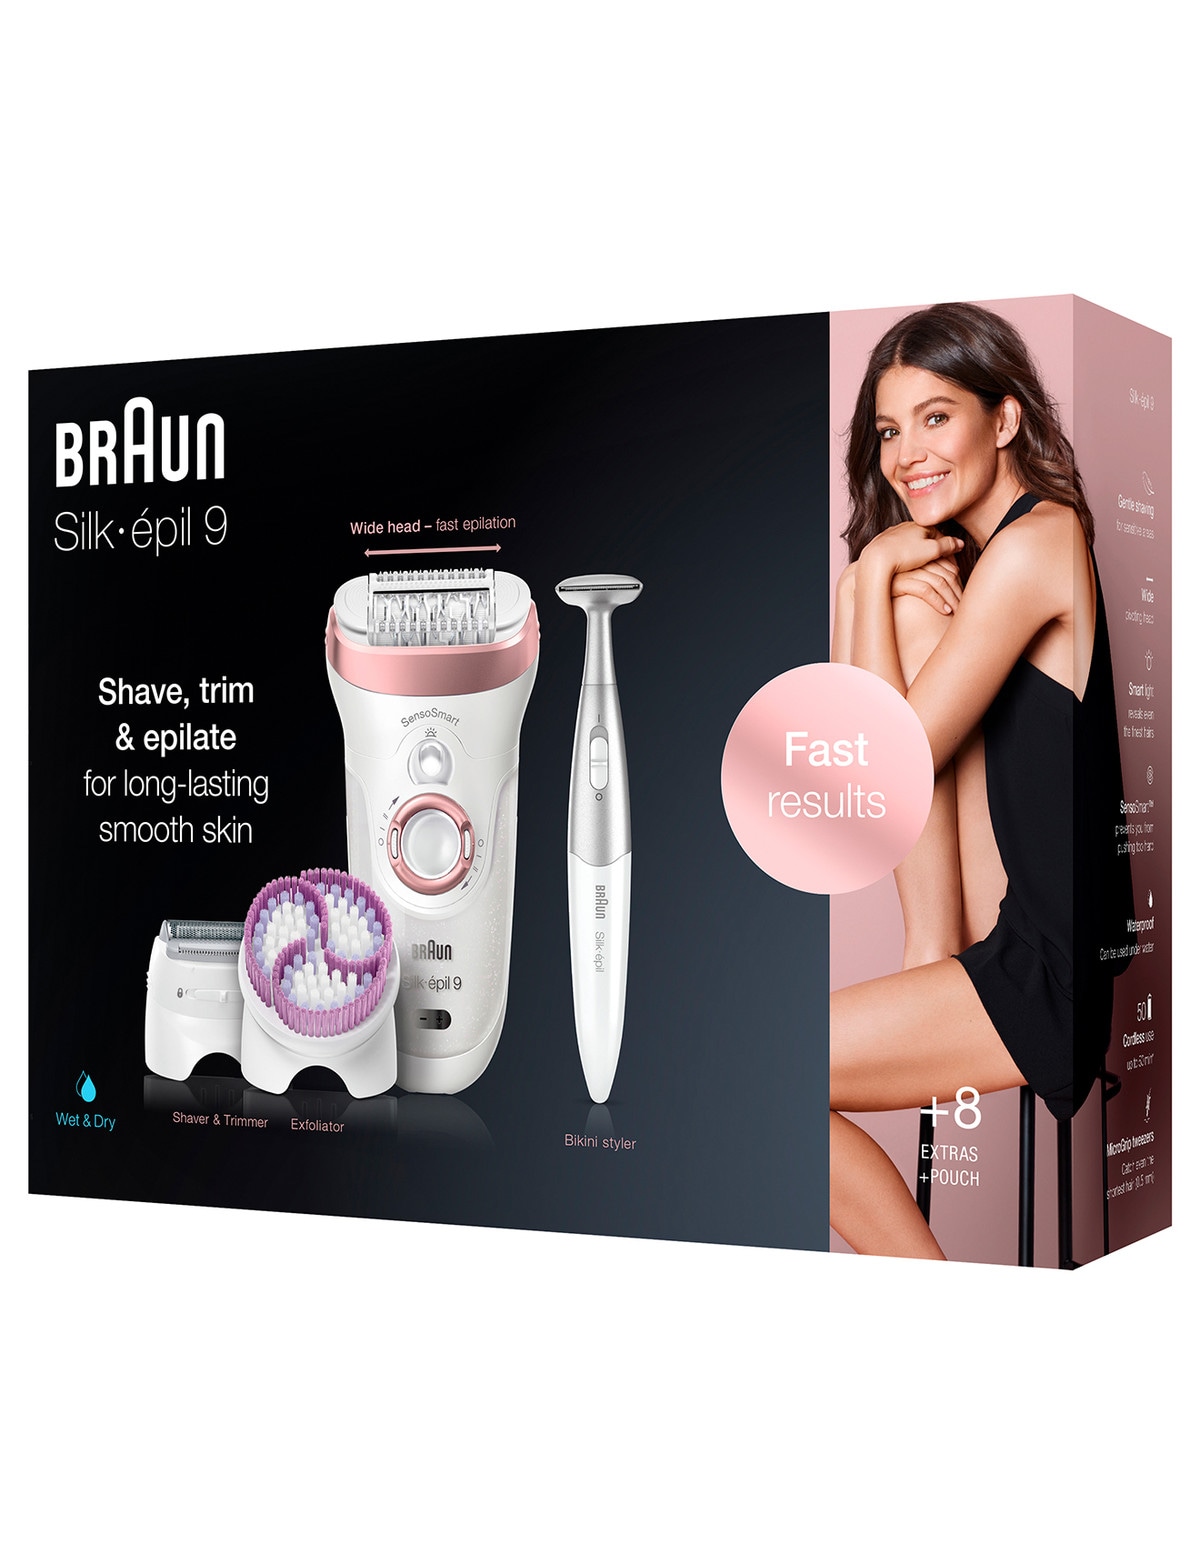 Braun Silk Epil 9, Braun Epilator, Long-lasting Hair Removal At Home